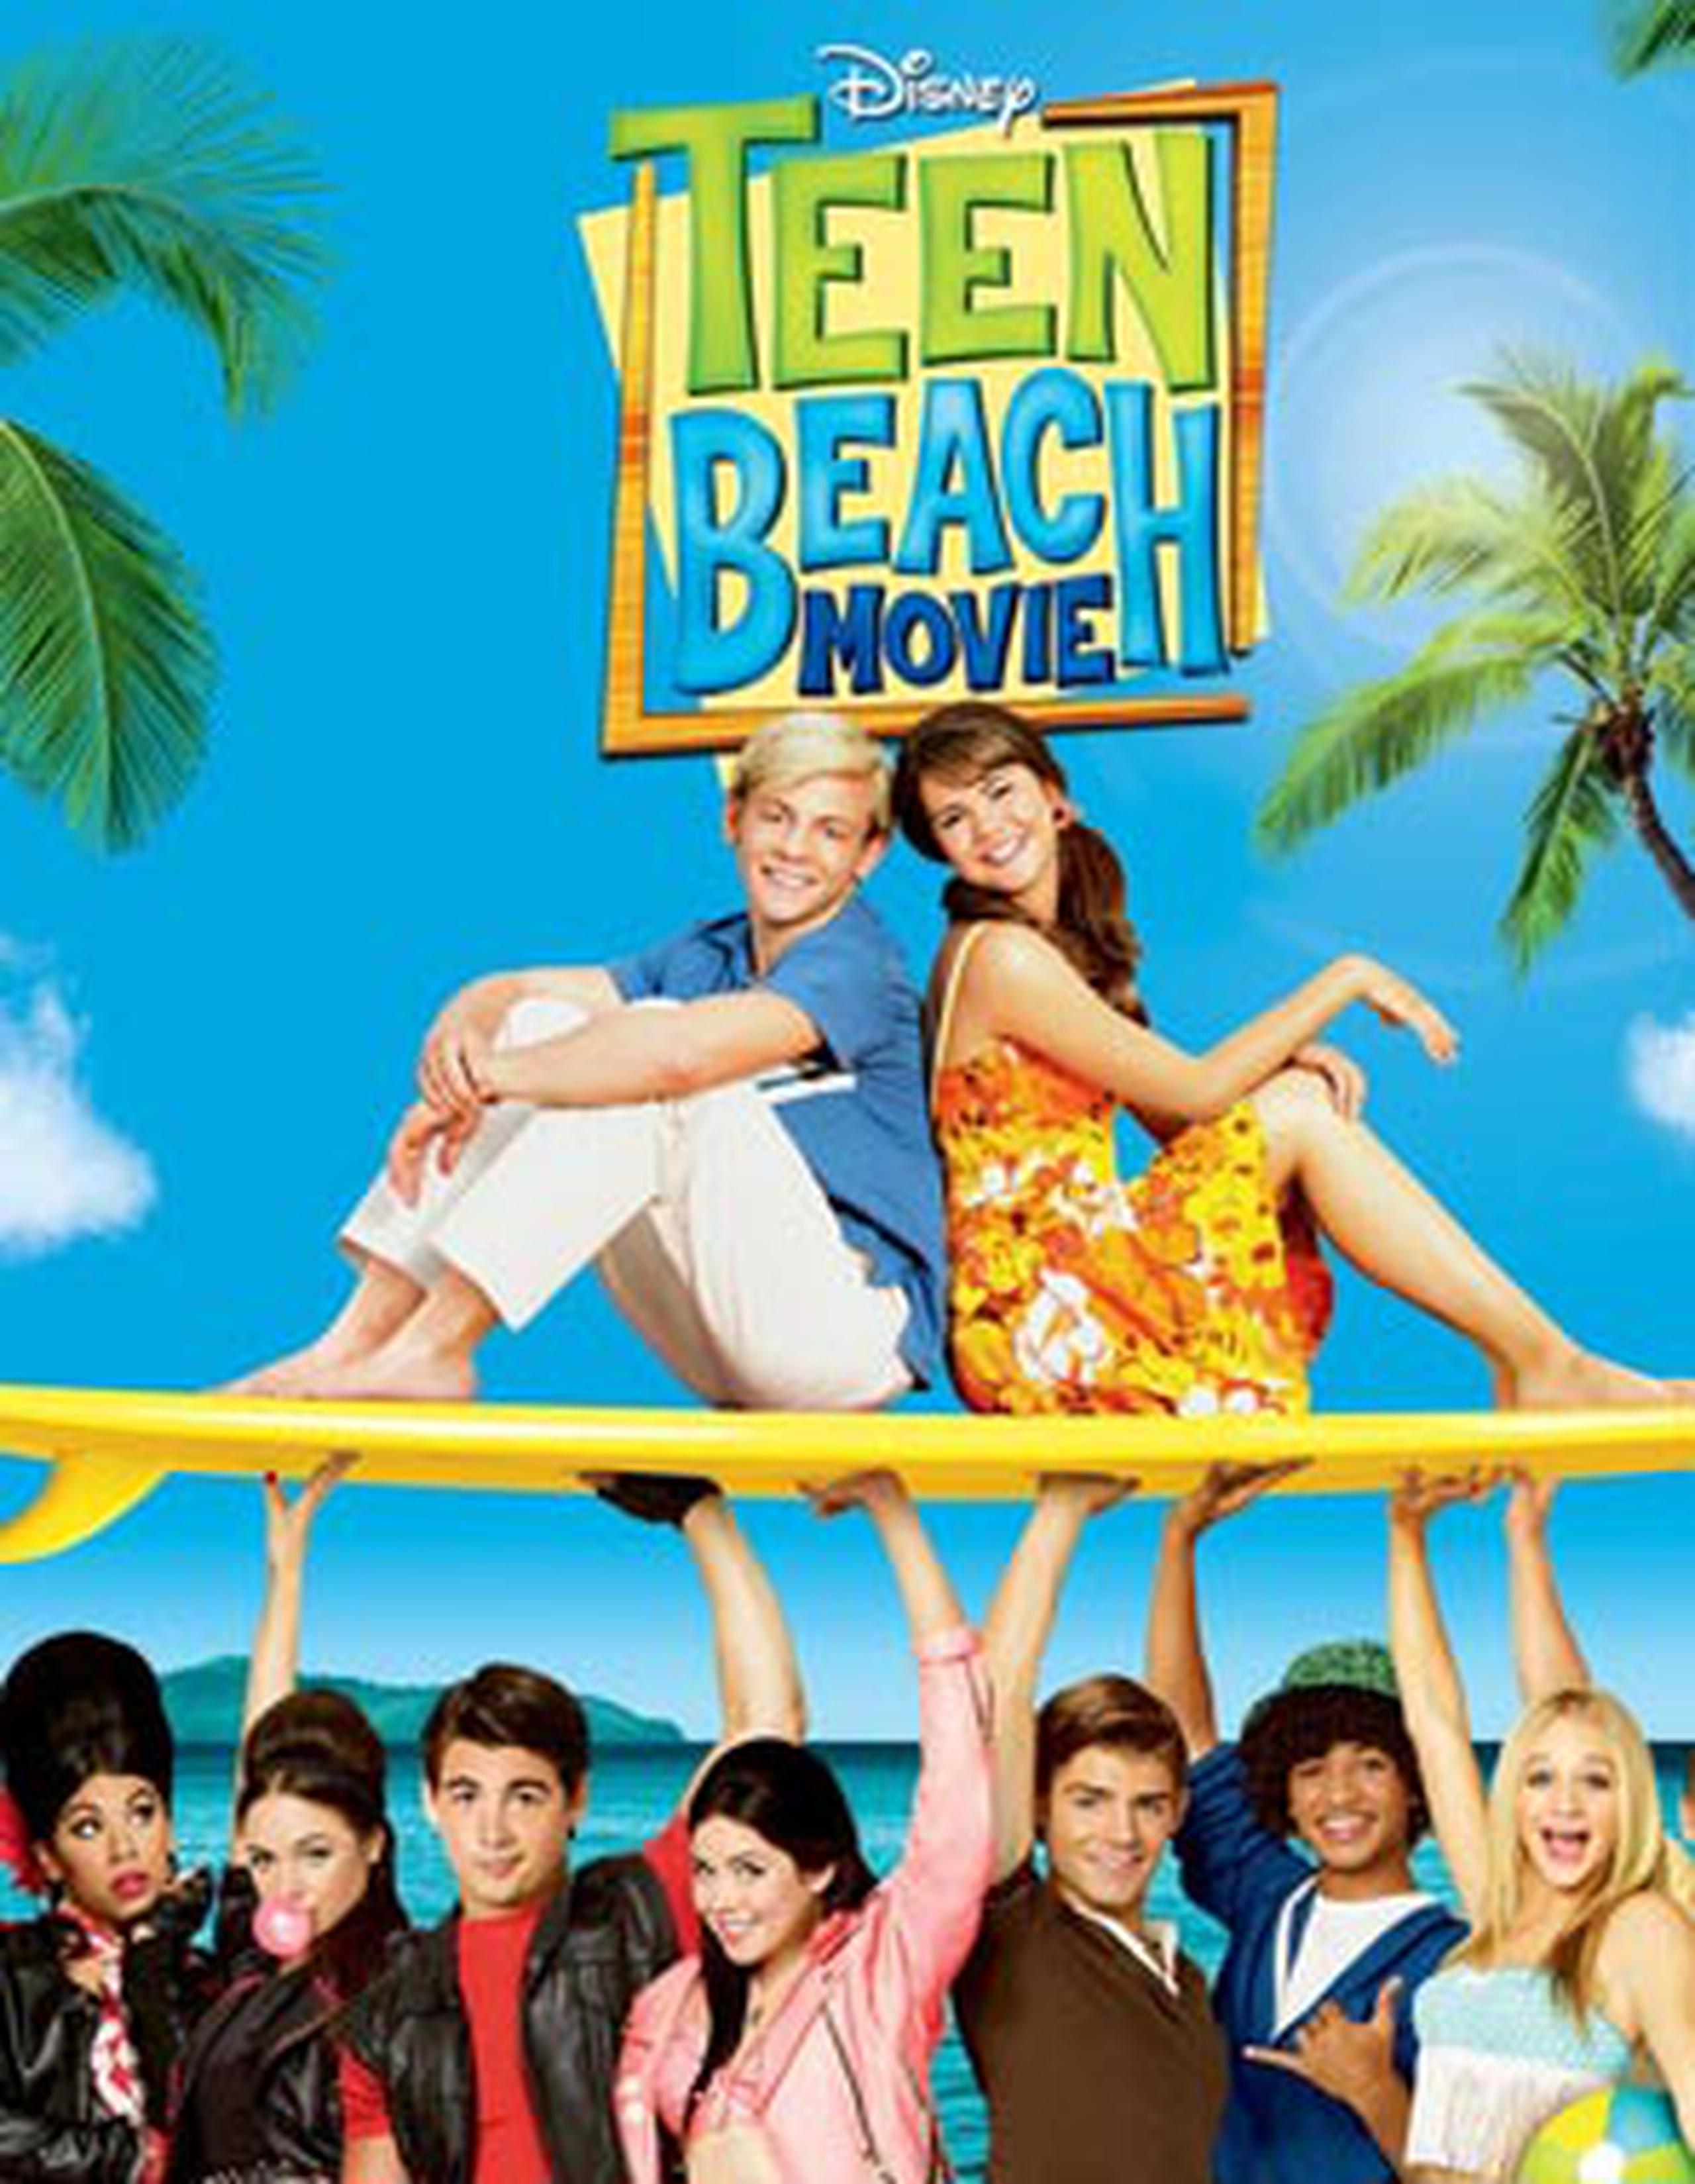 La primera parte de “Teen Beach Movie” se filmó en la Isla en el 2012. (Suministrada)